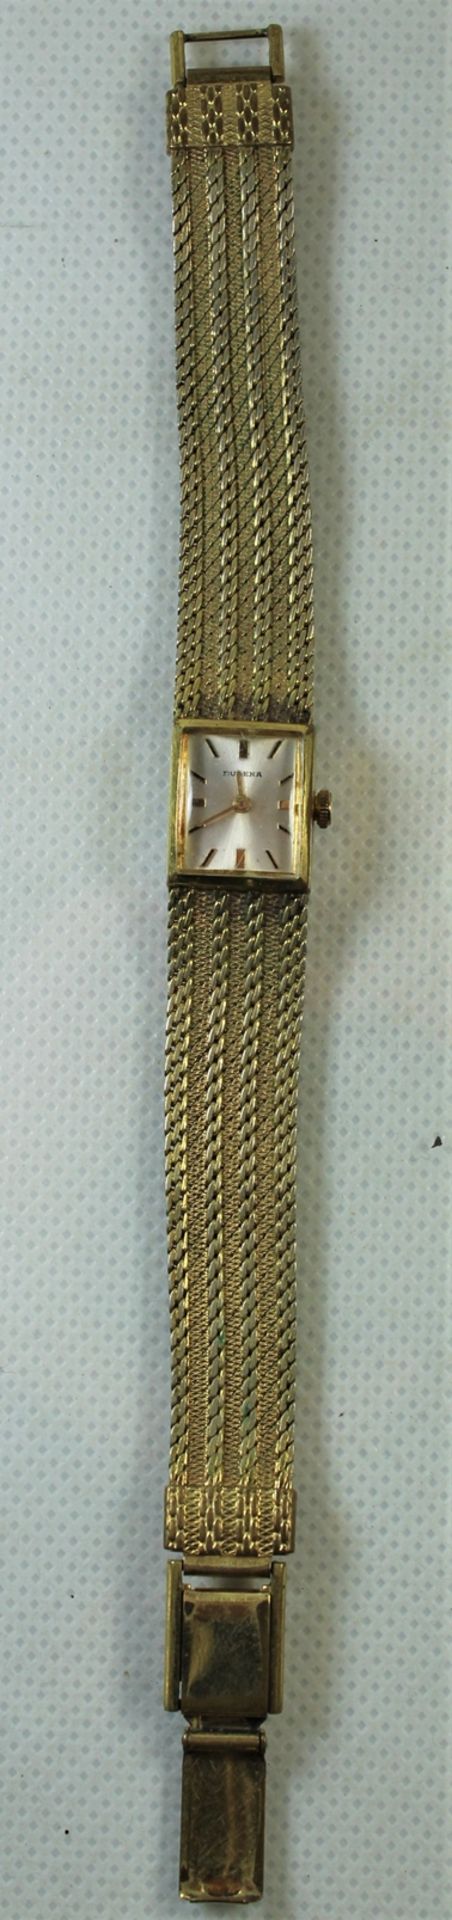 Damen Armbanduhr, Dugena, Quarzwerk, Gehäusemaße ca.: 1,7 x 1,7cm mit Krone gemessen, vergoldet, Fu - Image 2 of 5